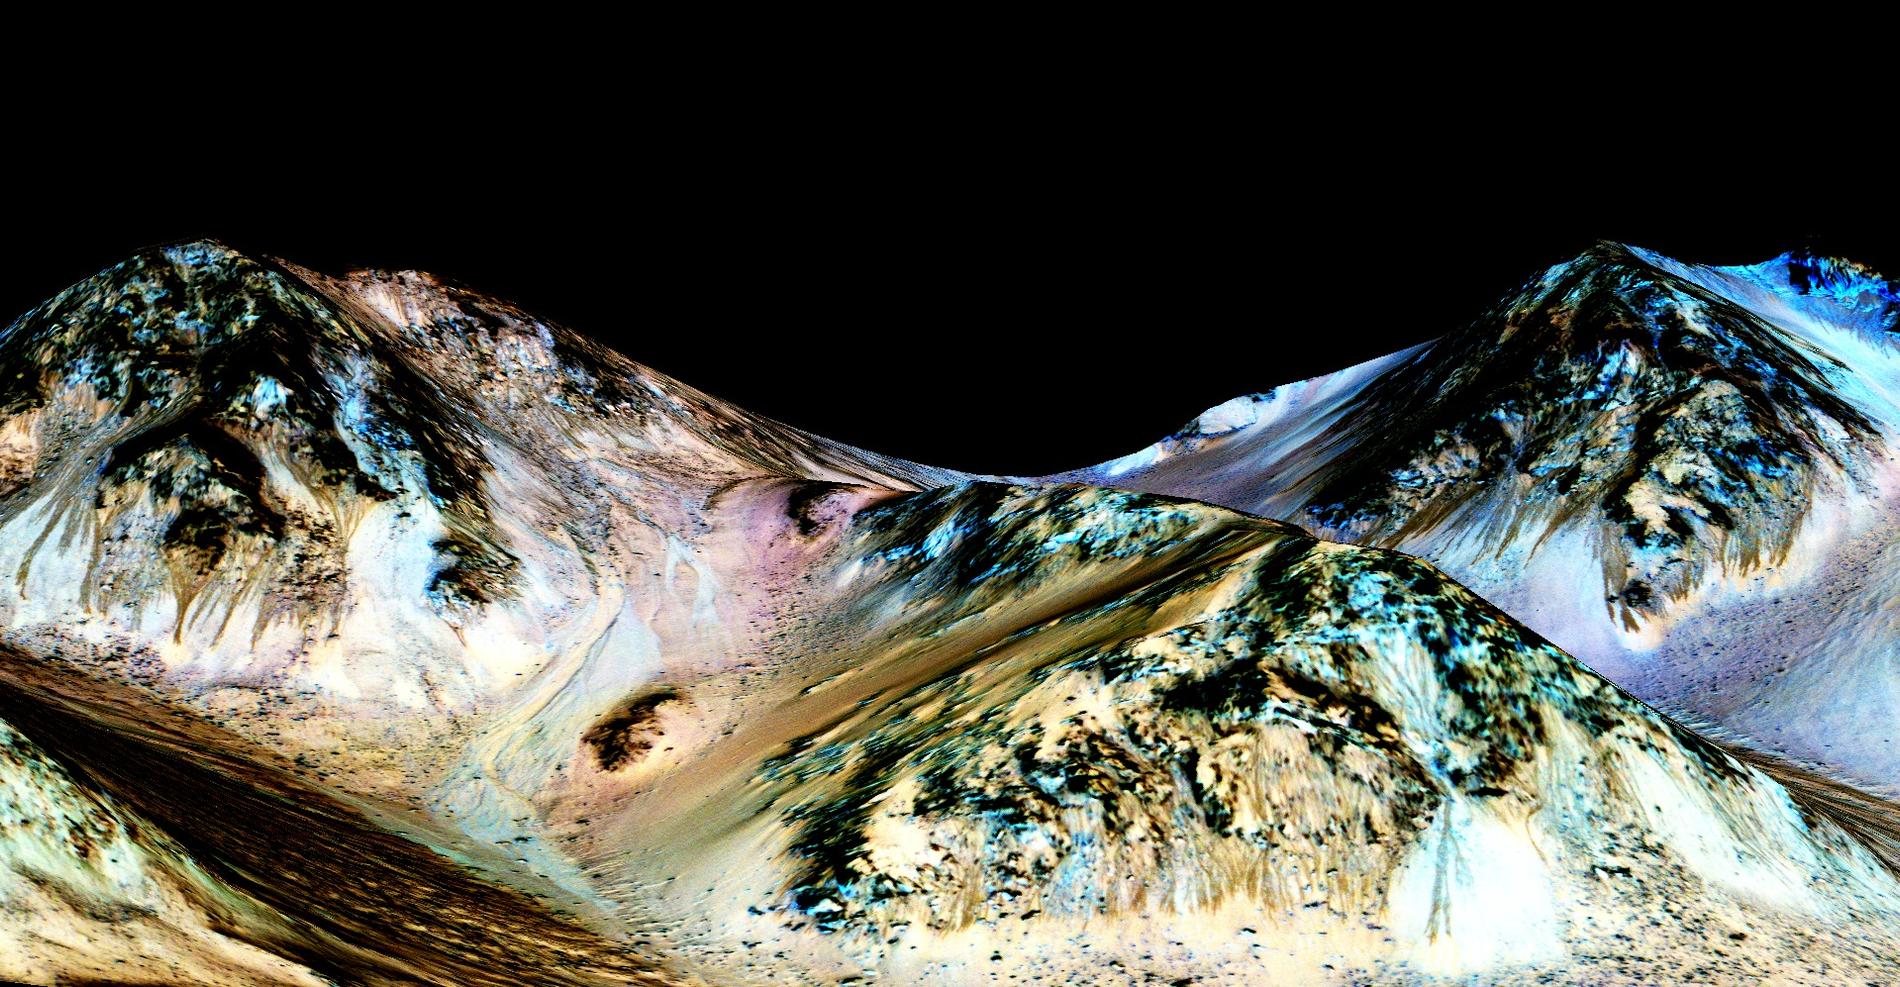 I september presenterade Nasa att man upptäckt flytande vatten på Mars. Längs branta sluttningar kan man se färska bäckfåror.